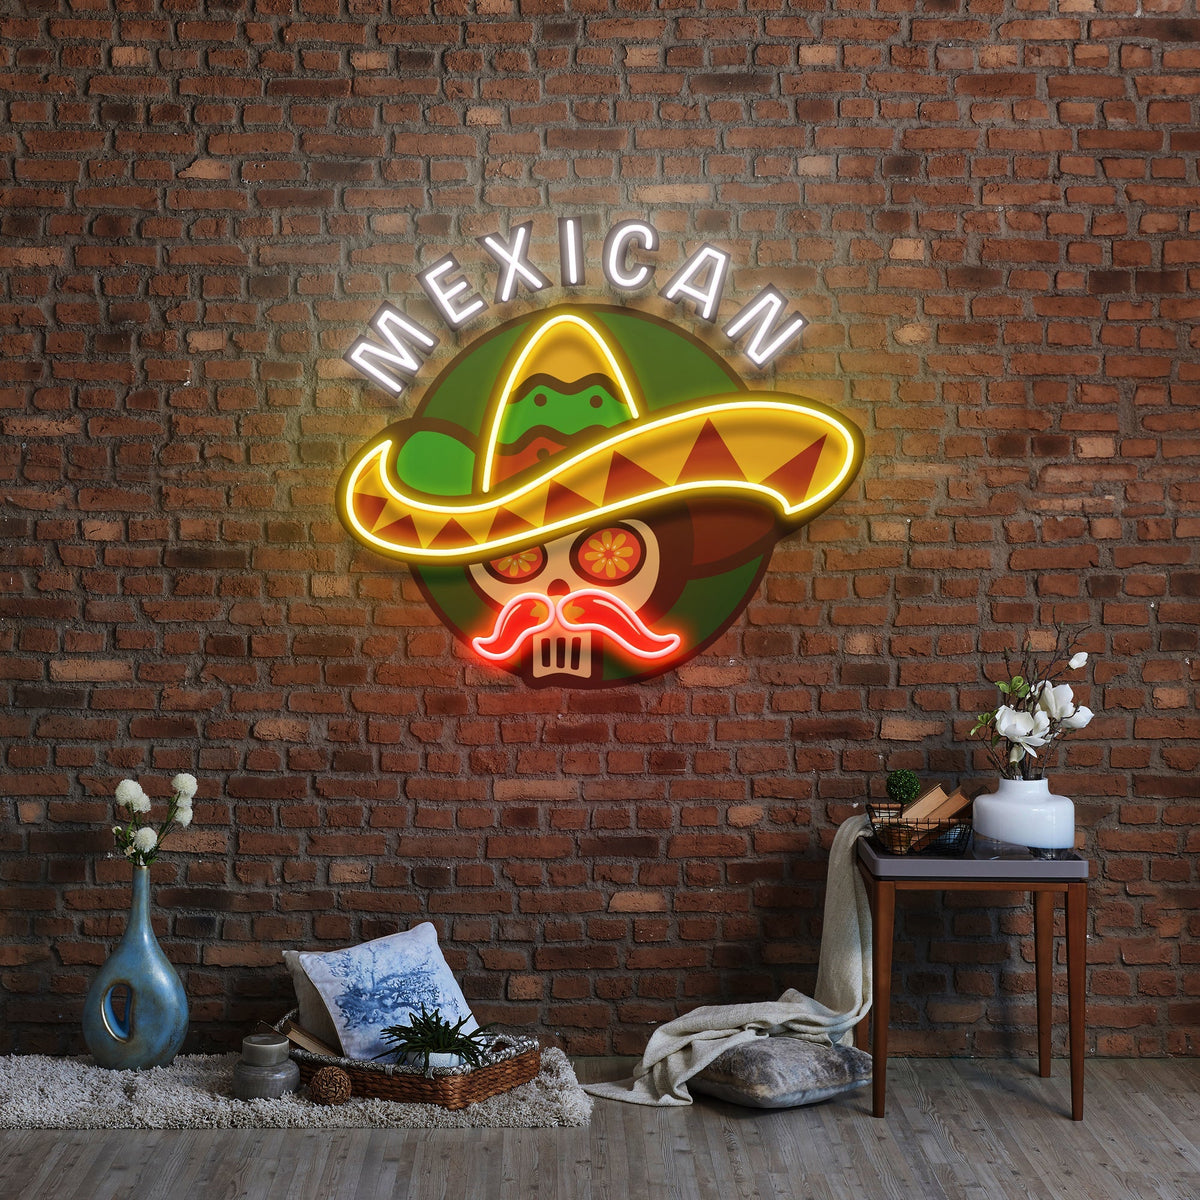 Mexico Restaurant Decor Artwork Led Neon Sign Light